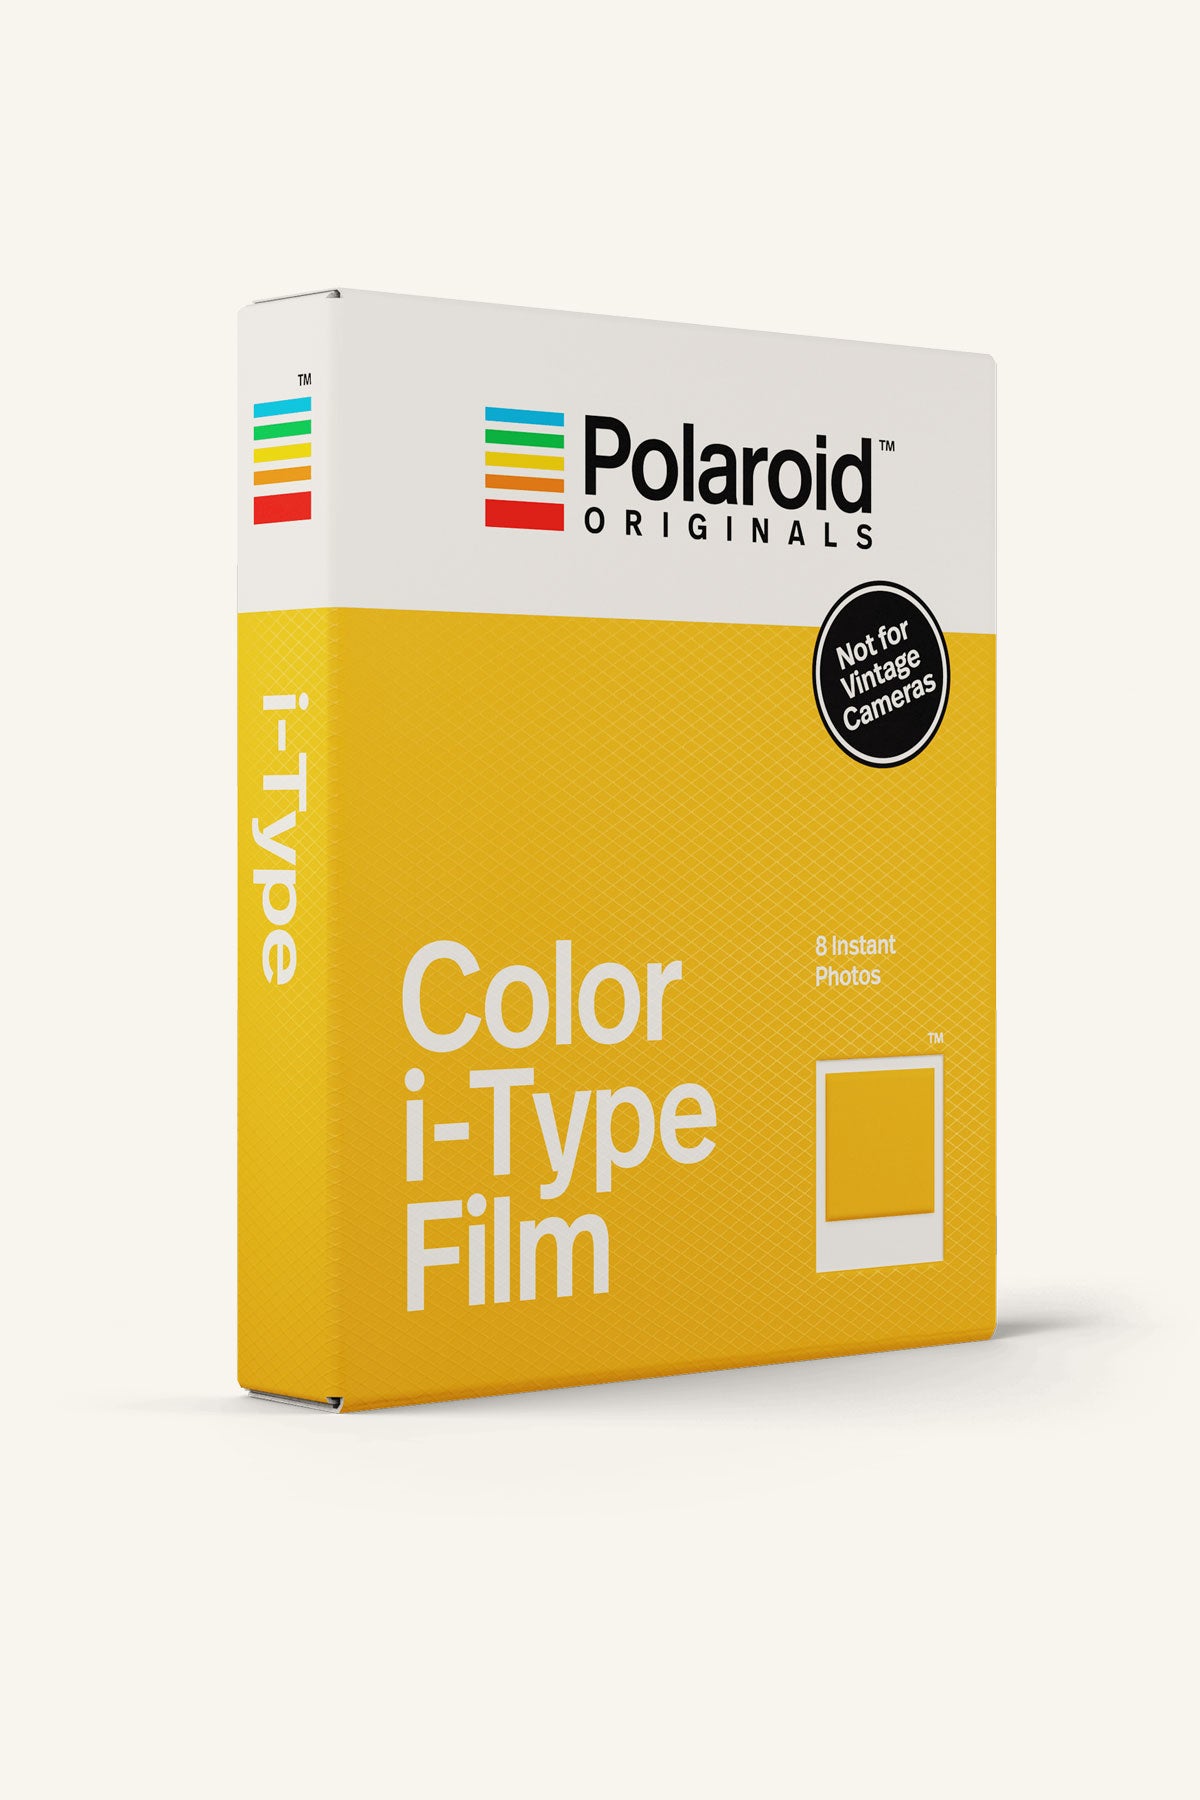 Polaroid Originals Colour OneStep 2 i-Type Film